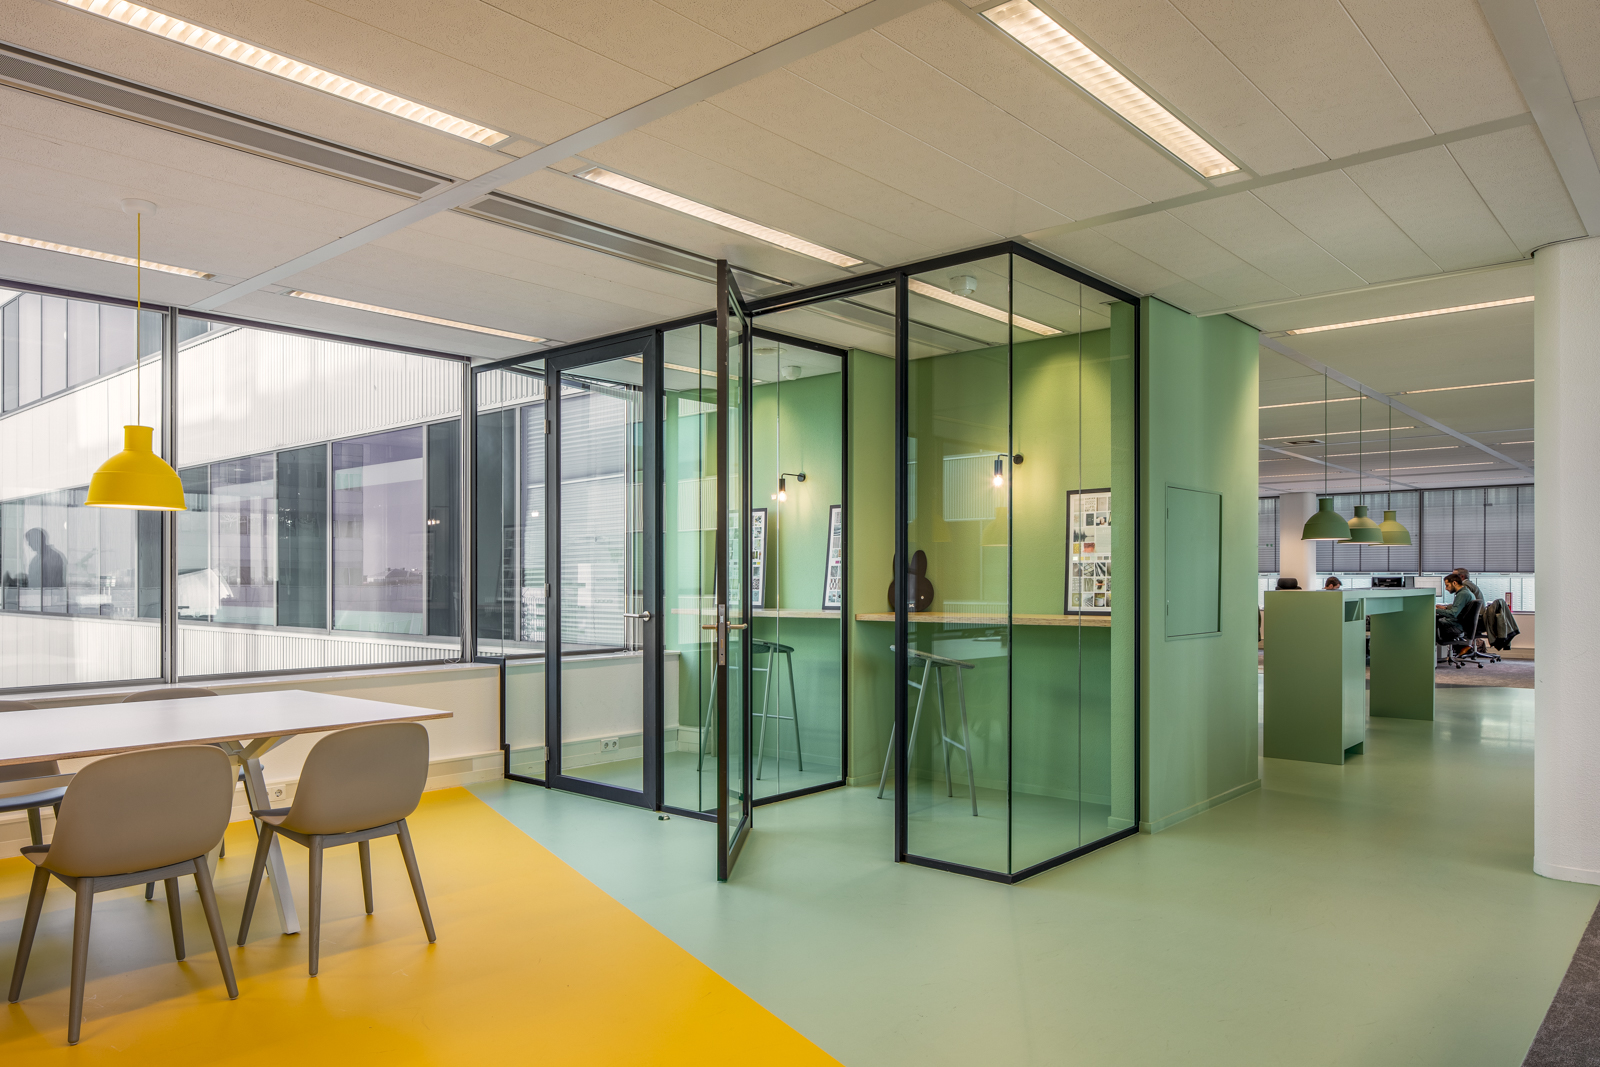 https://www.heyligersarchitects.nl/wp-content/uploads/2021/10/Bruna_08_interieur_heyligers_architect_kantoor_office_design_WoutervanderSar_19112100-37.jpg